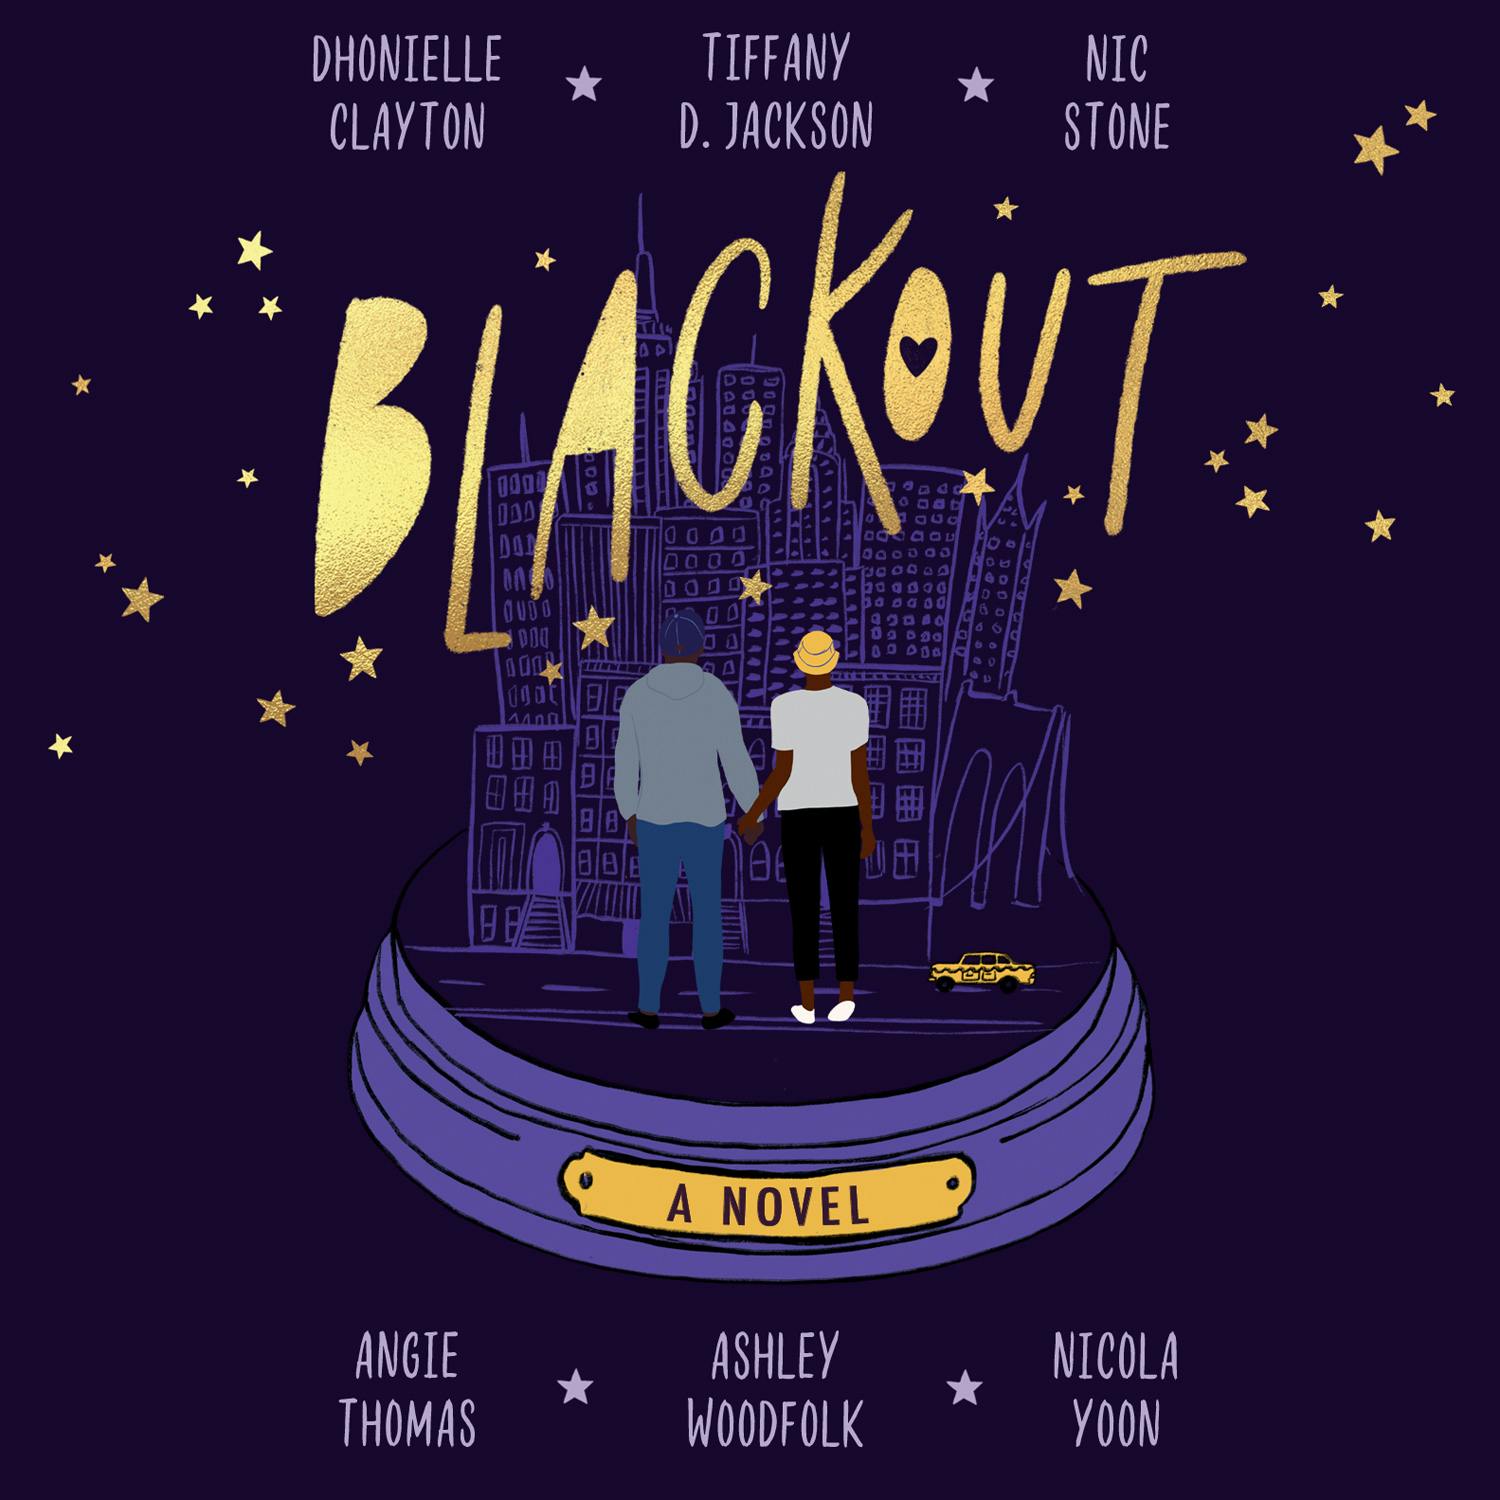 Blackout - Nicola Yoon, Dhonielle Clayton, Tiffany D Jackson, Nic Stone, Ashley Woodfolk, Angie Thomas